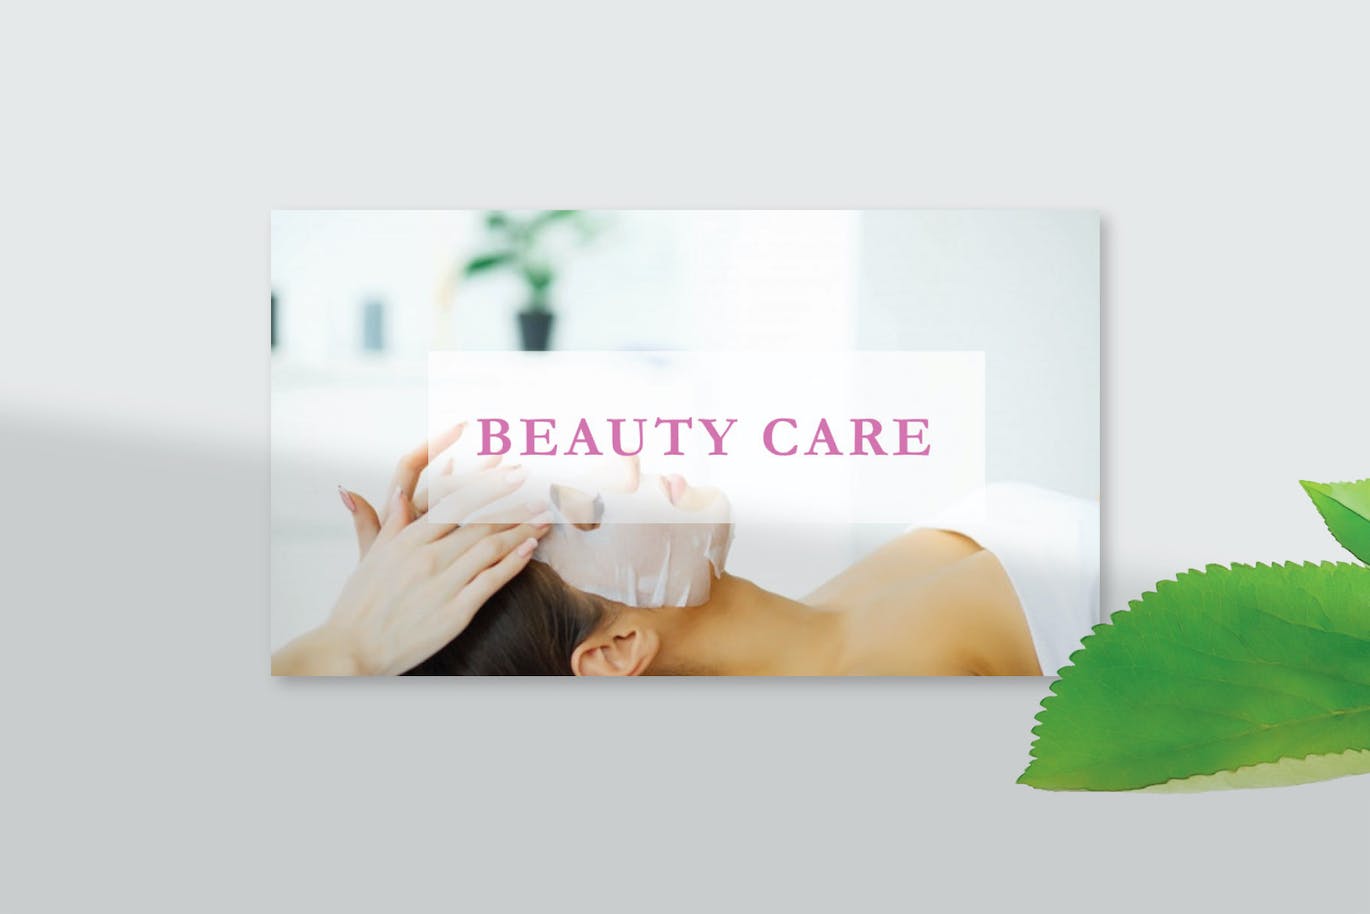 美容护理业务PPT素材 Beauty Care – PowerPoint Template 幻灯图表 第2张